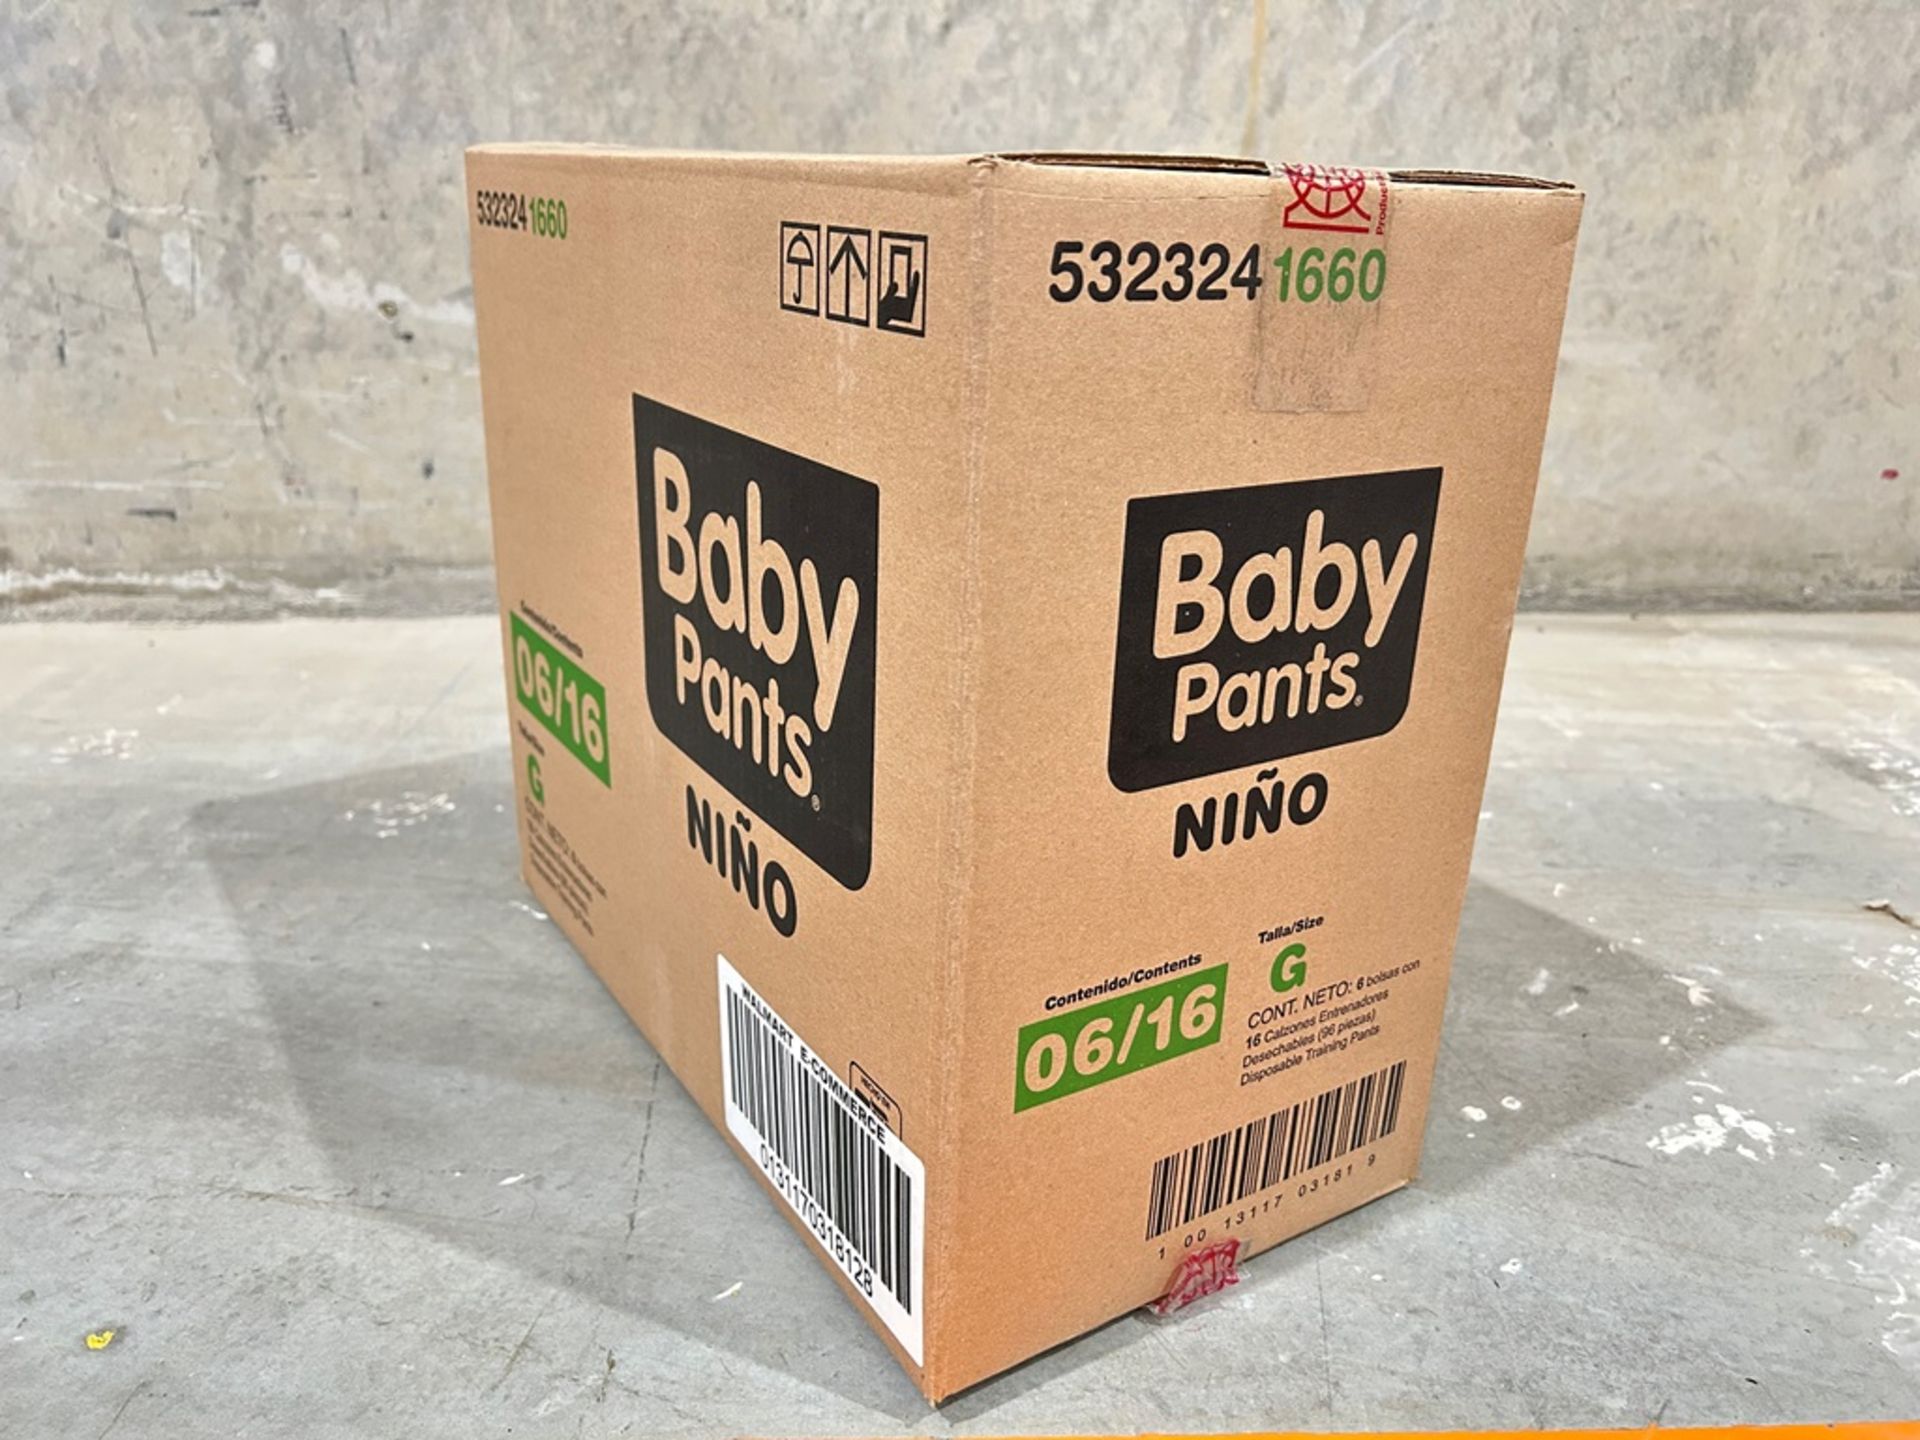 90 paquetes de Calzones entrenadores, Marca Baby pants para niño talla G (15 Cajas/ 6 paquetes) - Image 2 of 10